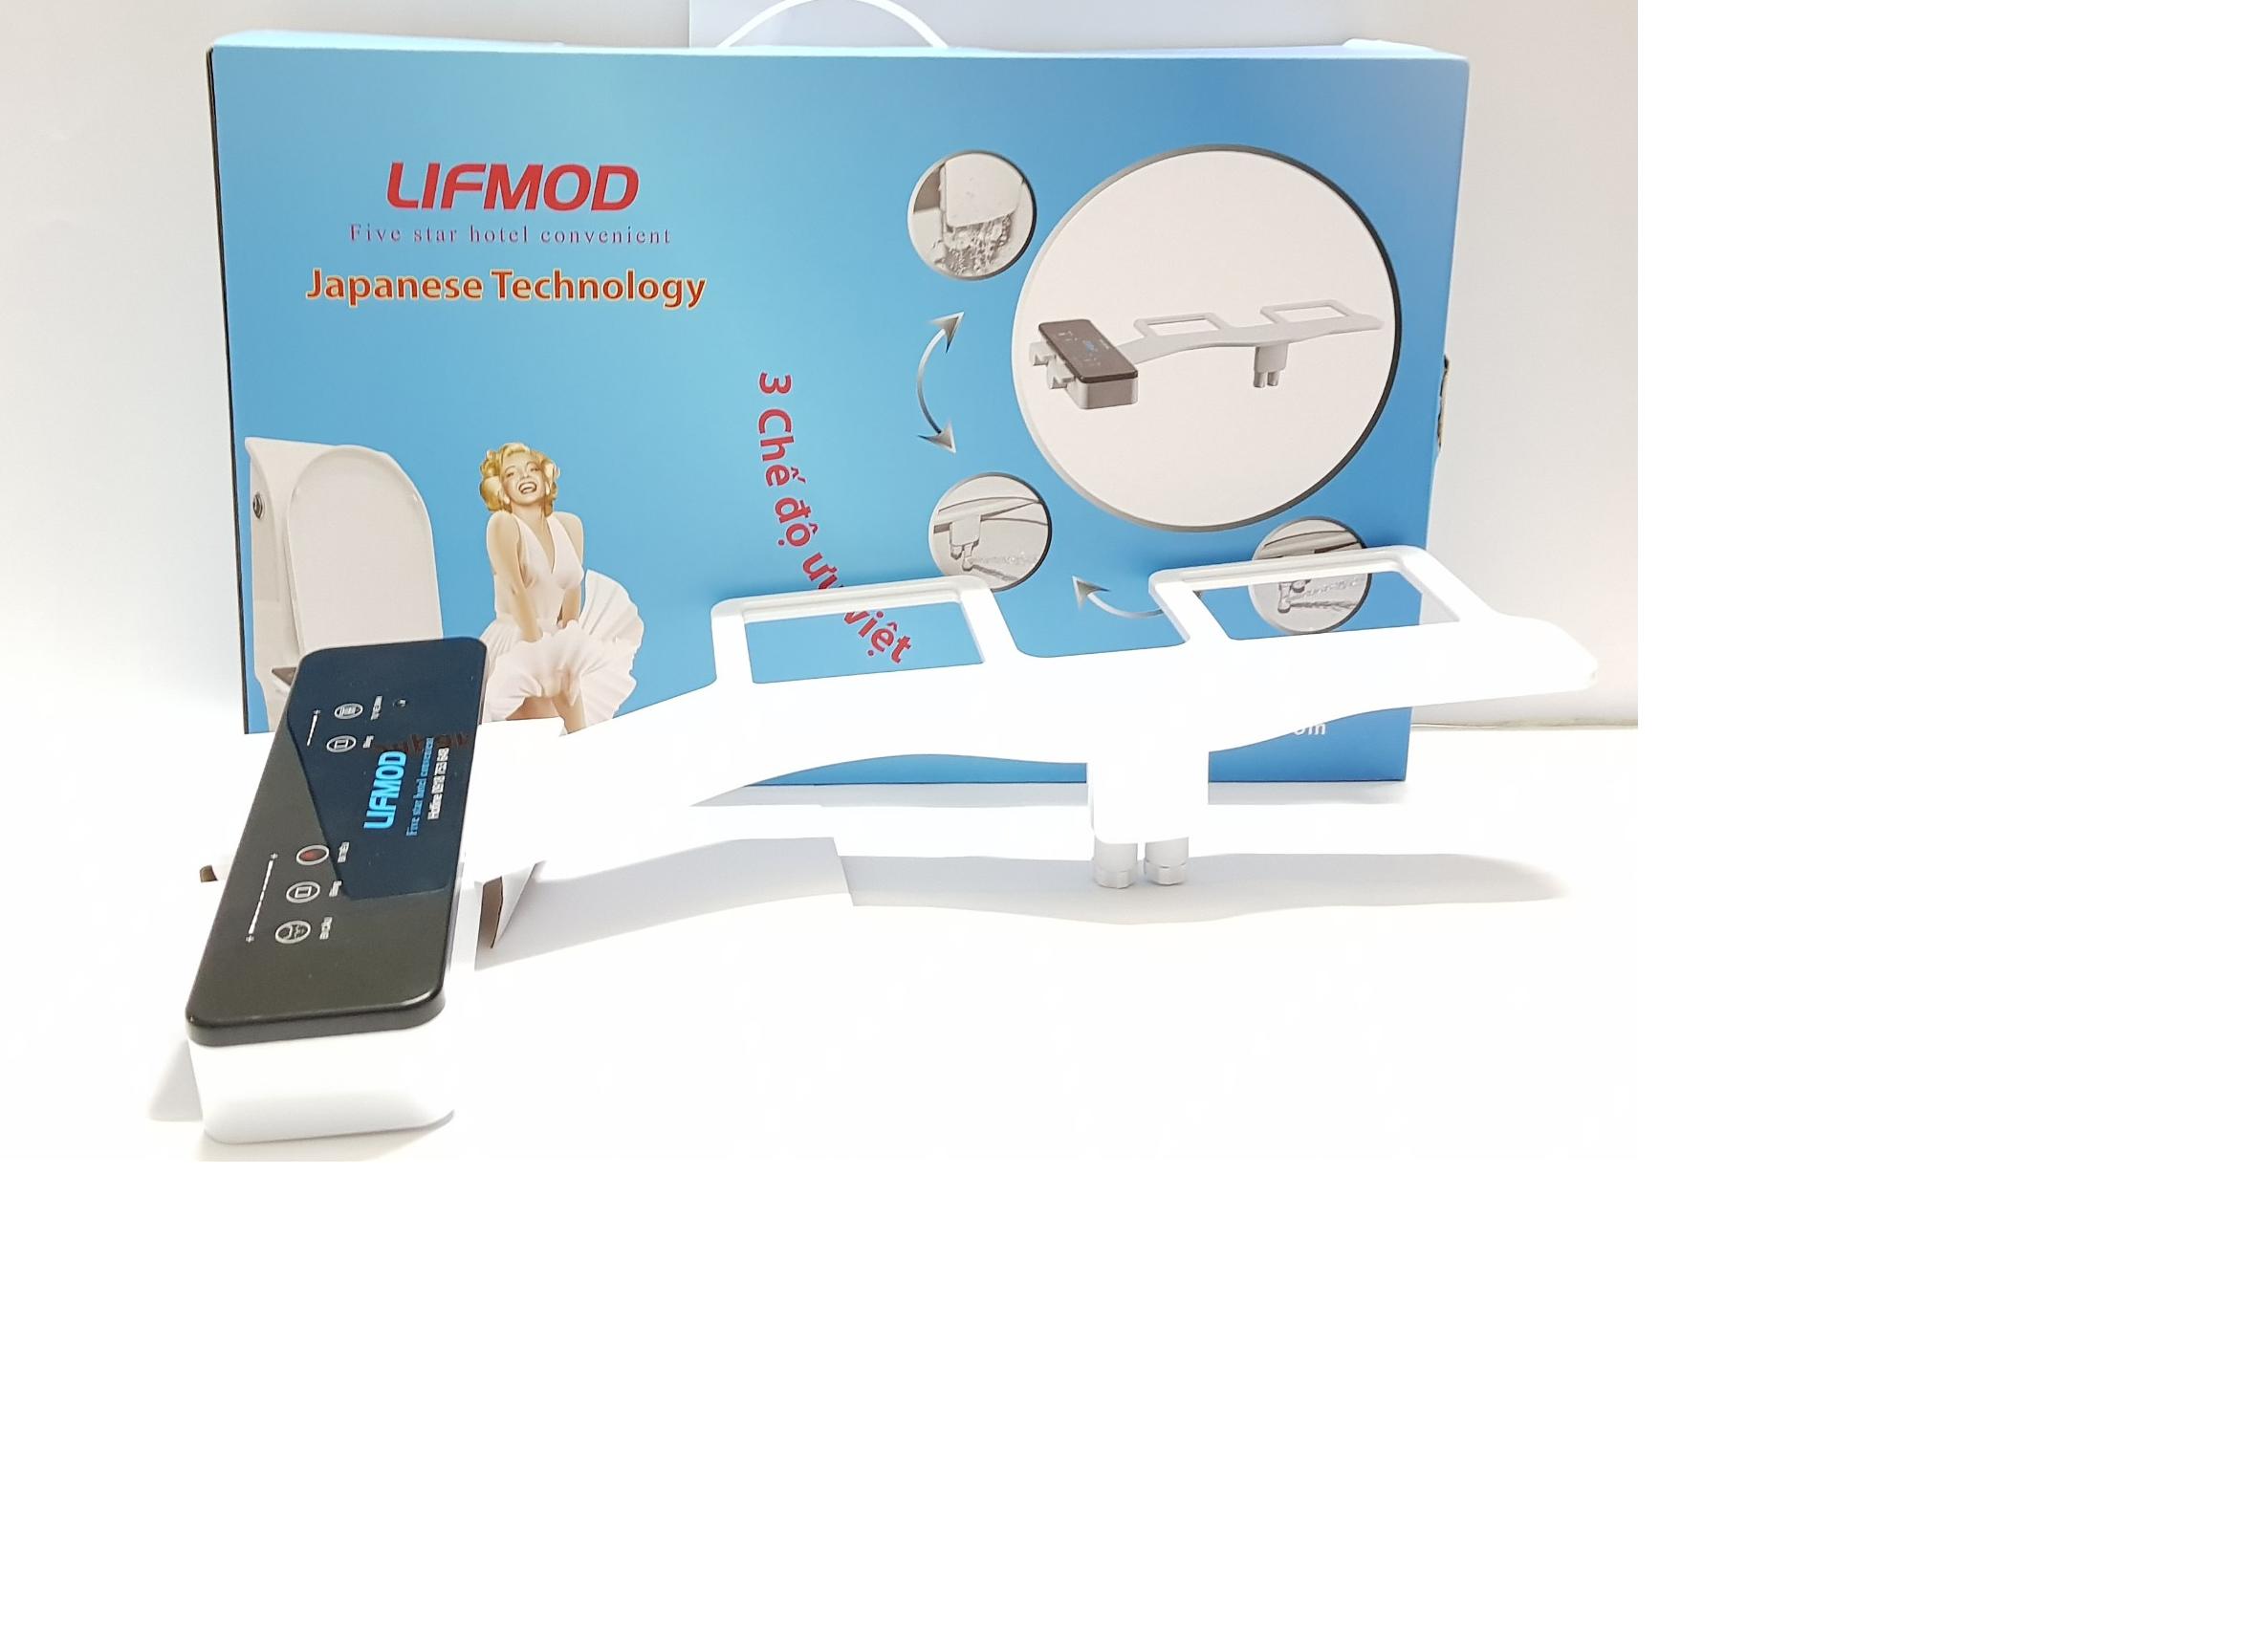 Xịt vệ sinh thông minh LIFMOD có nước ấm bản cao cấp Super Deluxe Bidet